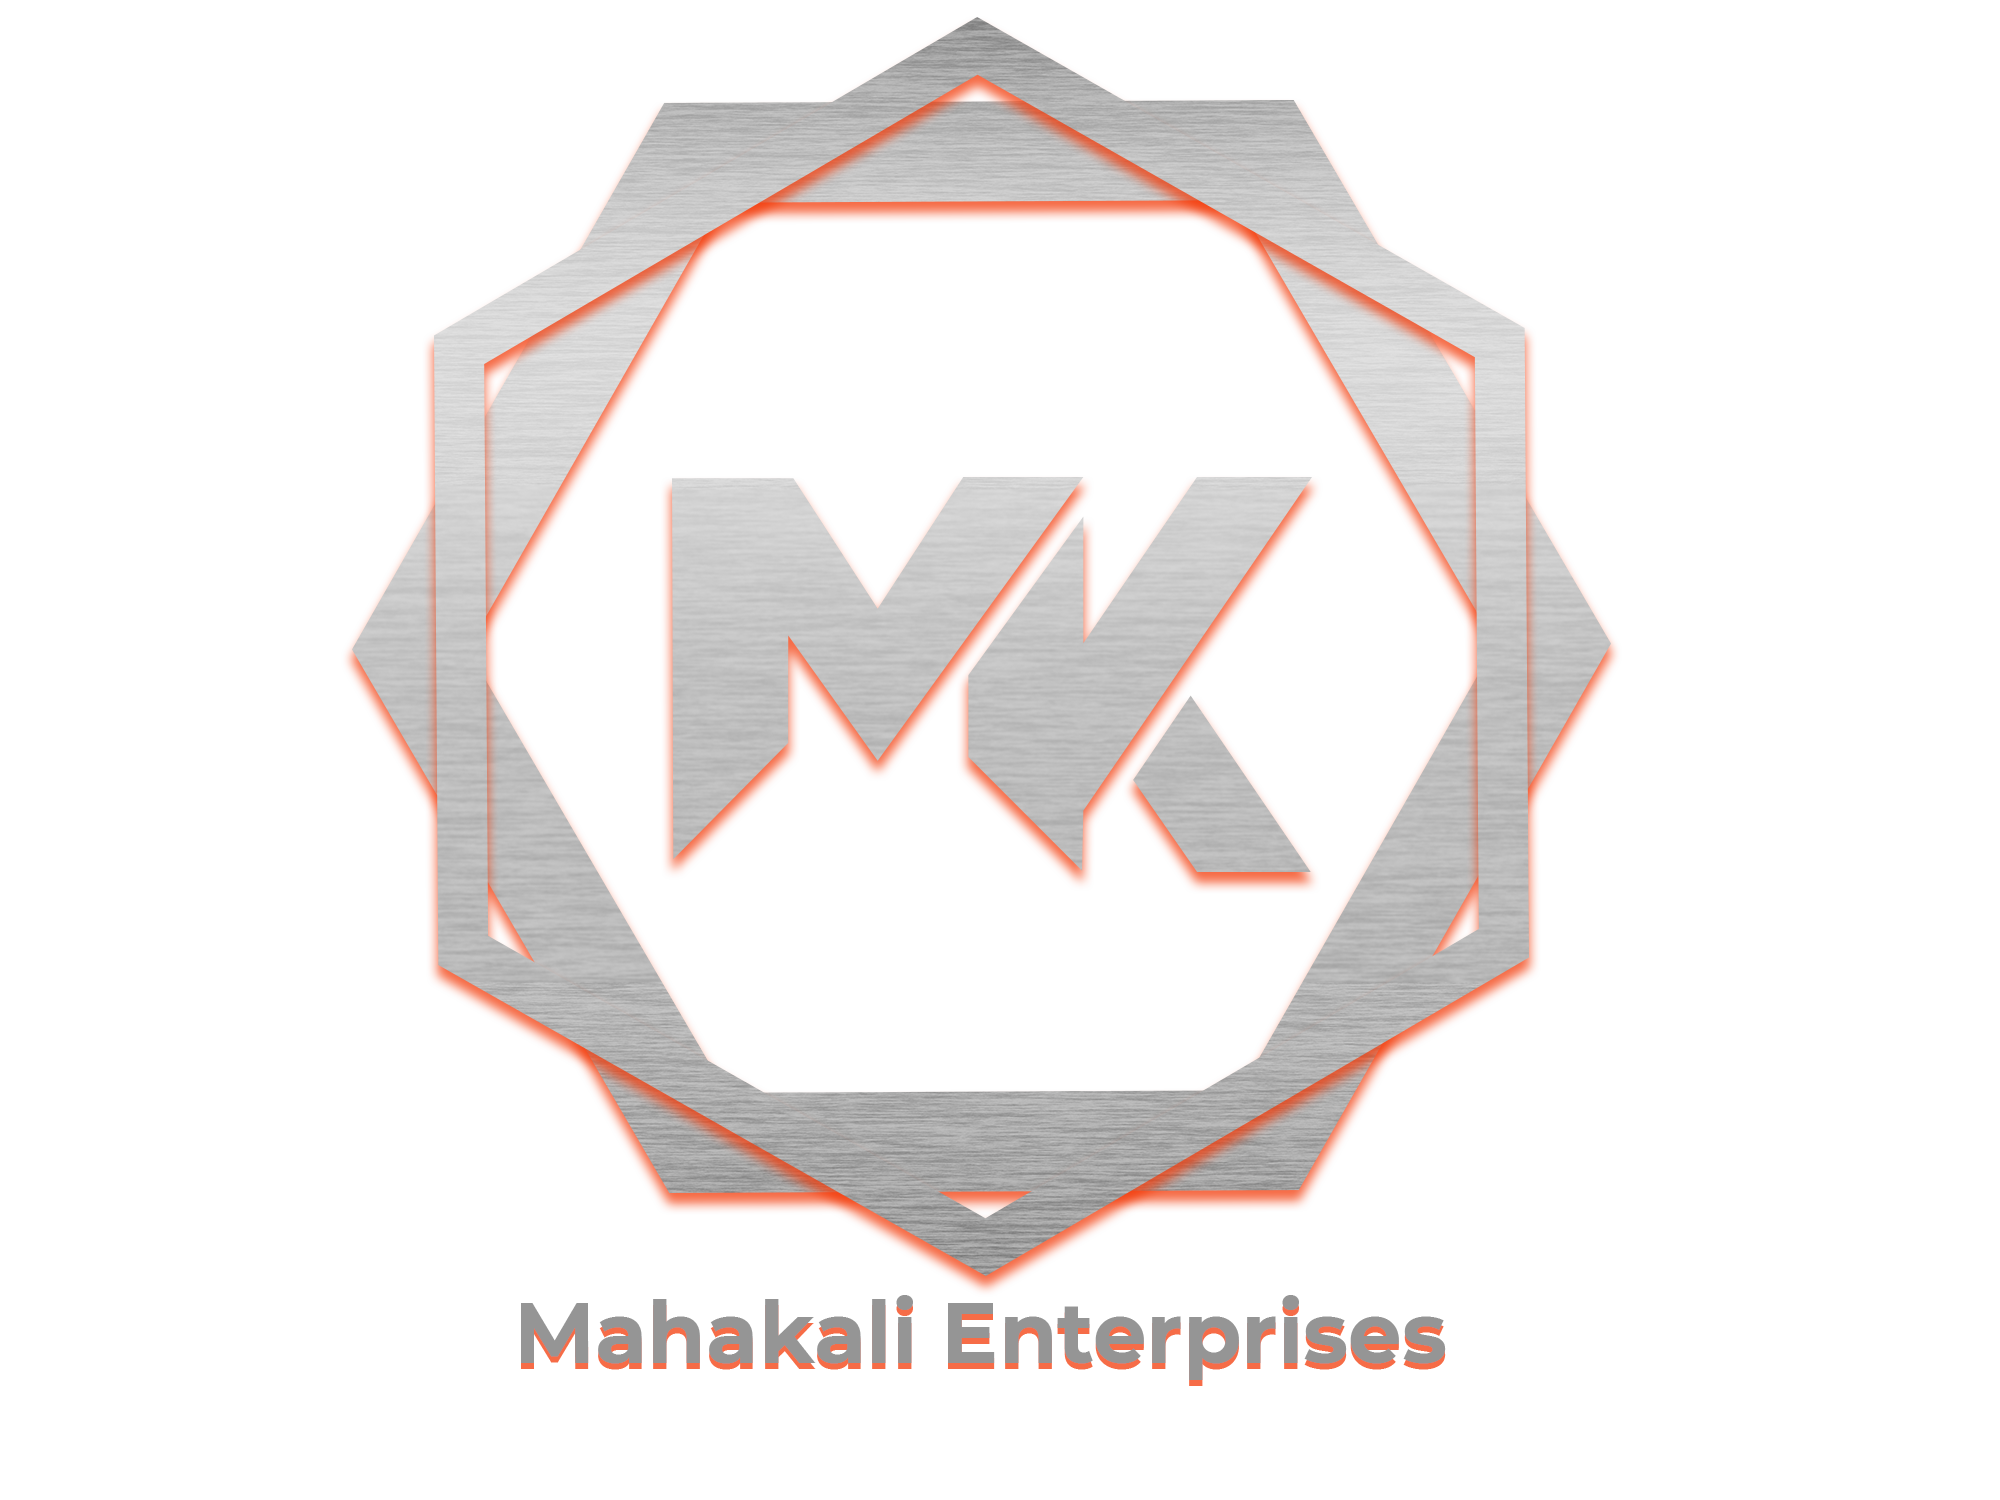 Mahakali Enterprises